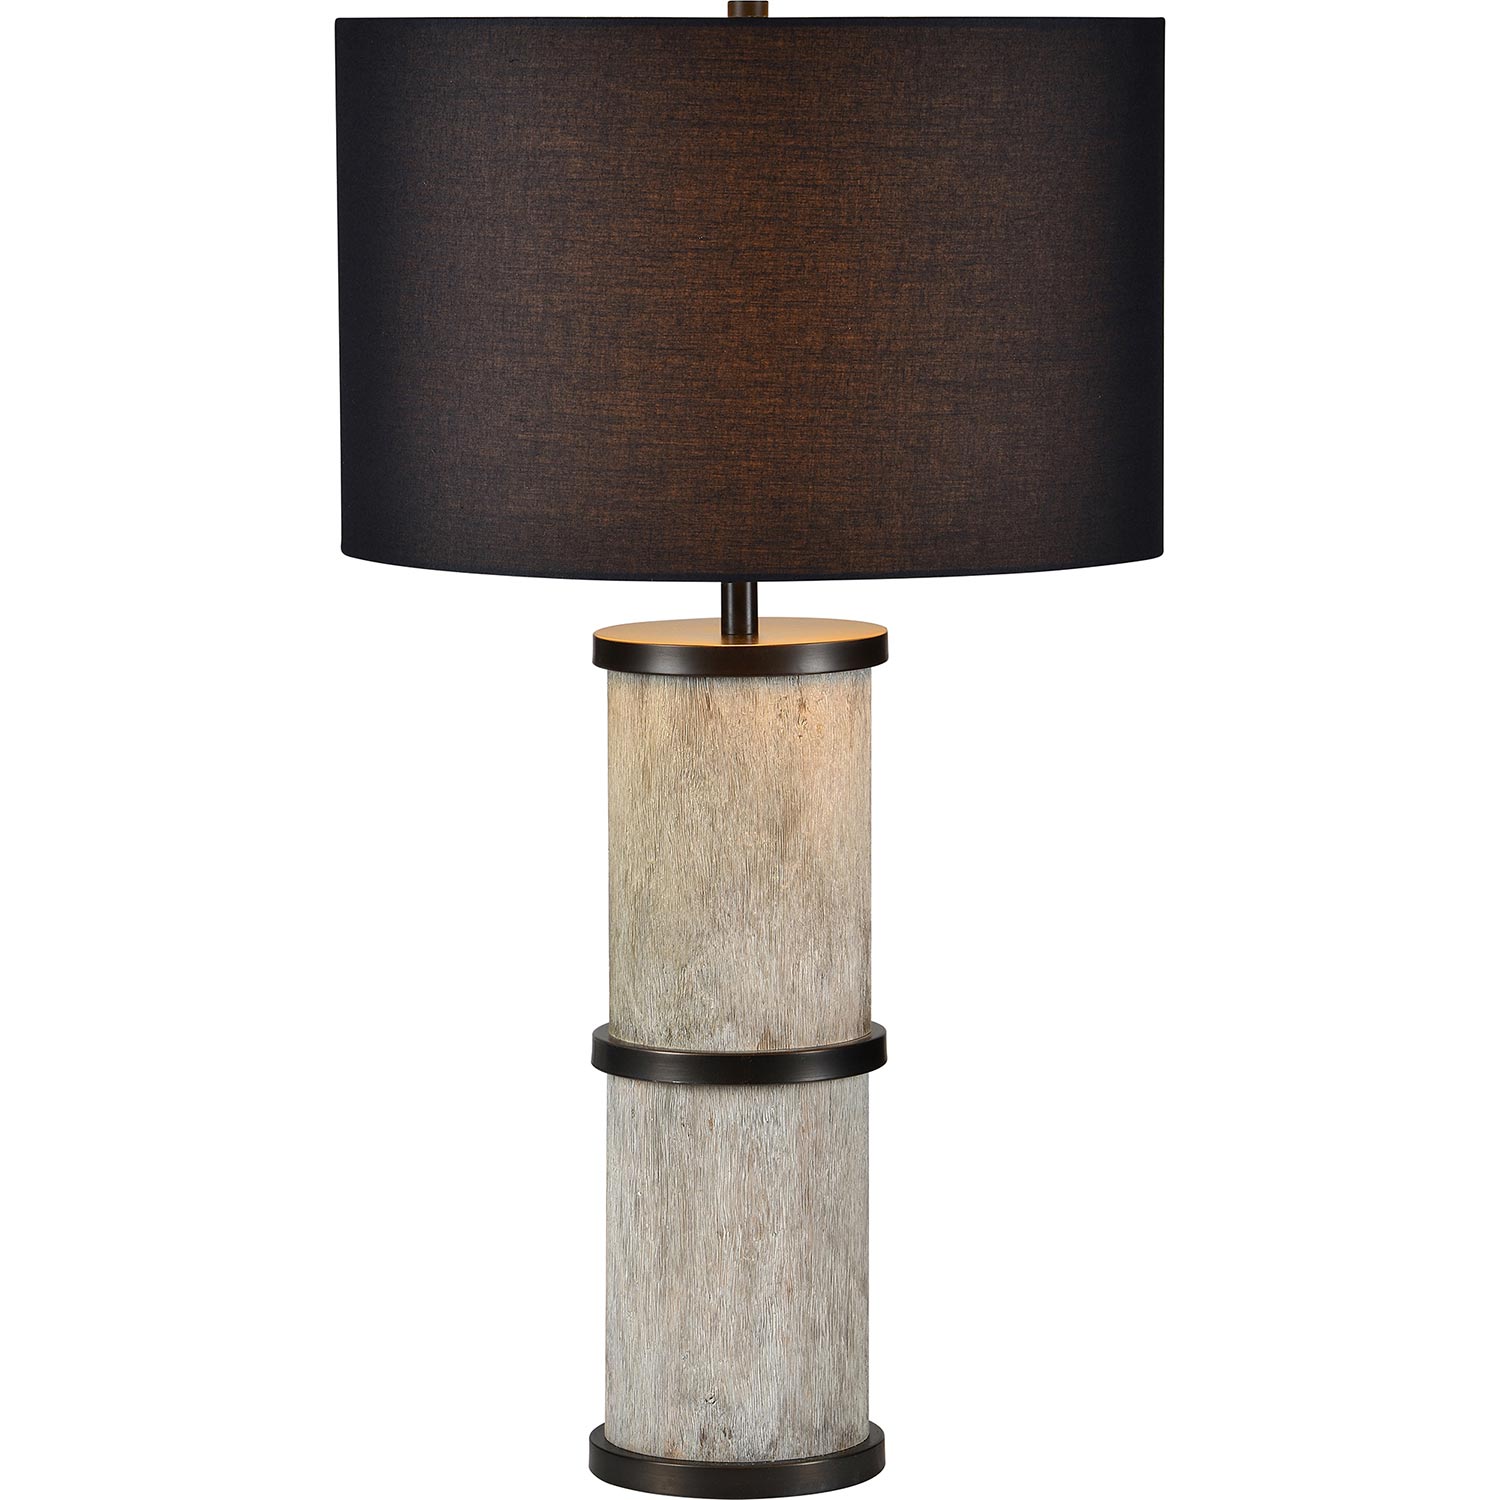 Ren-Wil Walden Table Lamp - Dark Bronze/White Wash